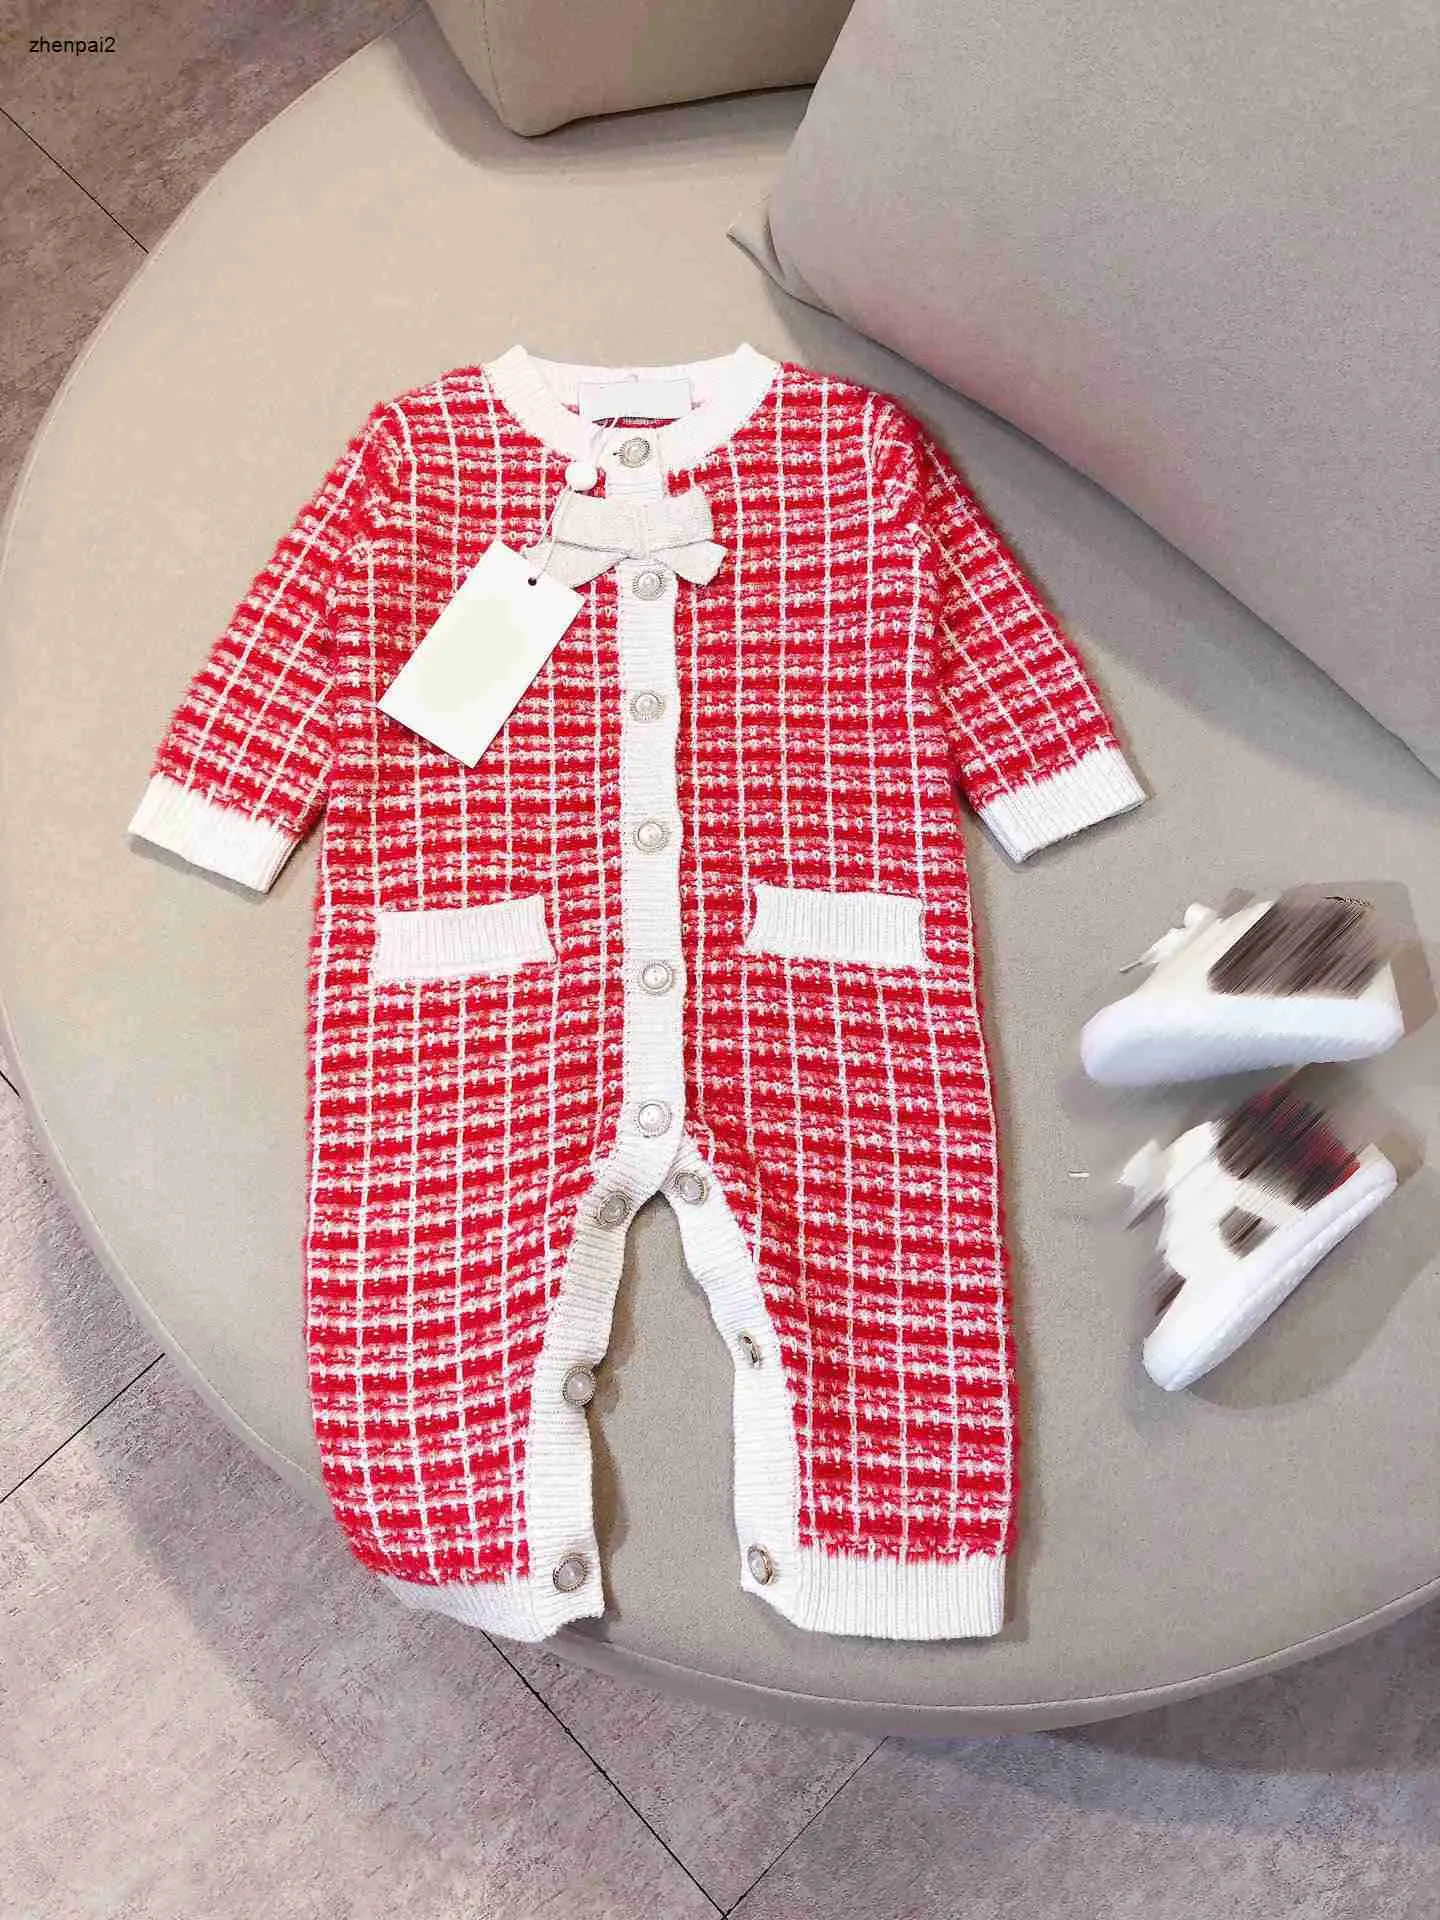 Luxury kids jumpsuits designer infant bodysuit Size 59-90 White pearl buttons born baby clothes Dec10